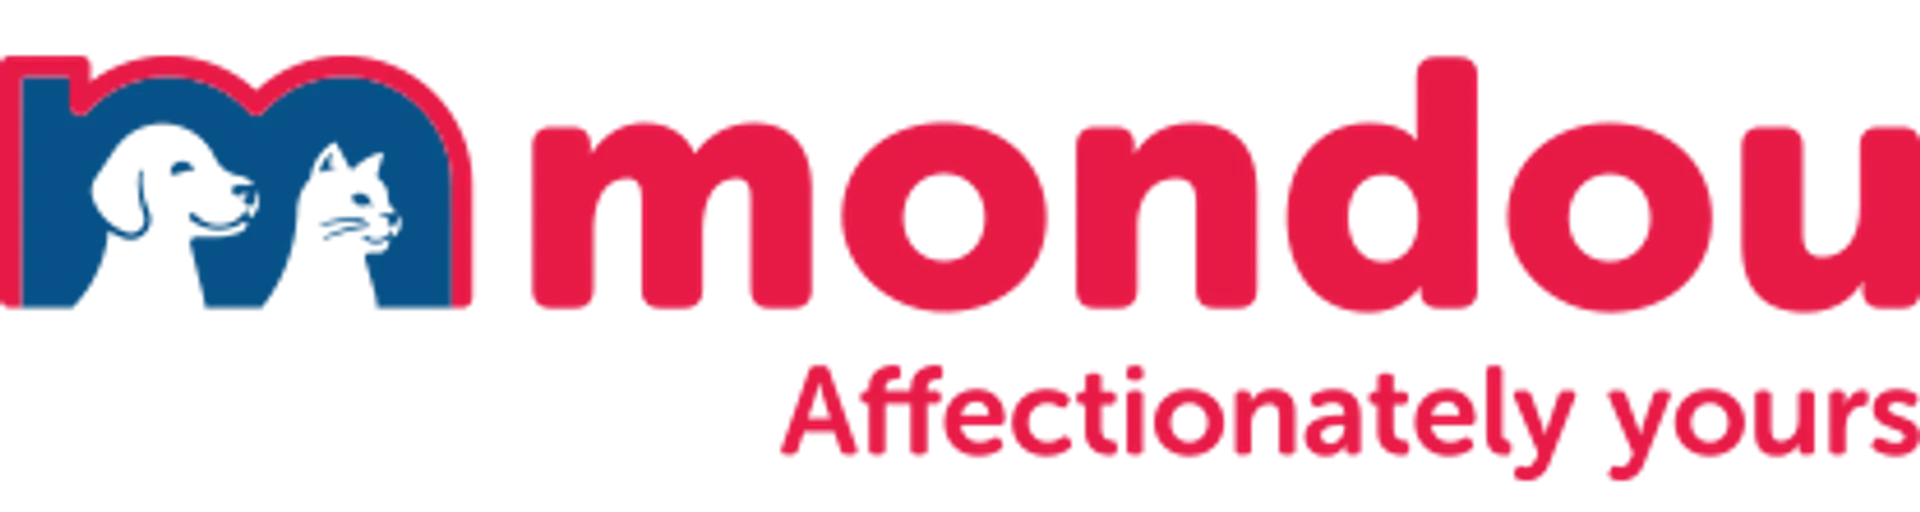 MONDOU logo de circulaire